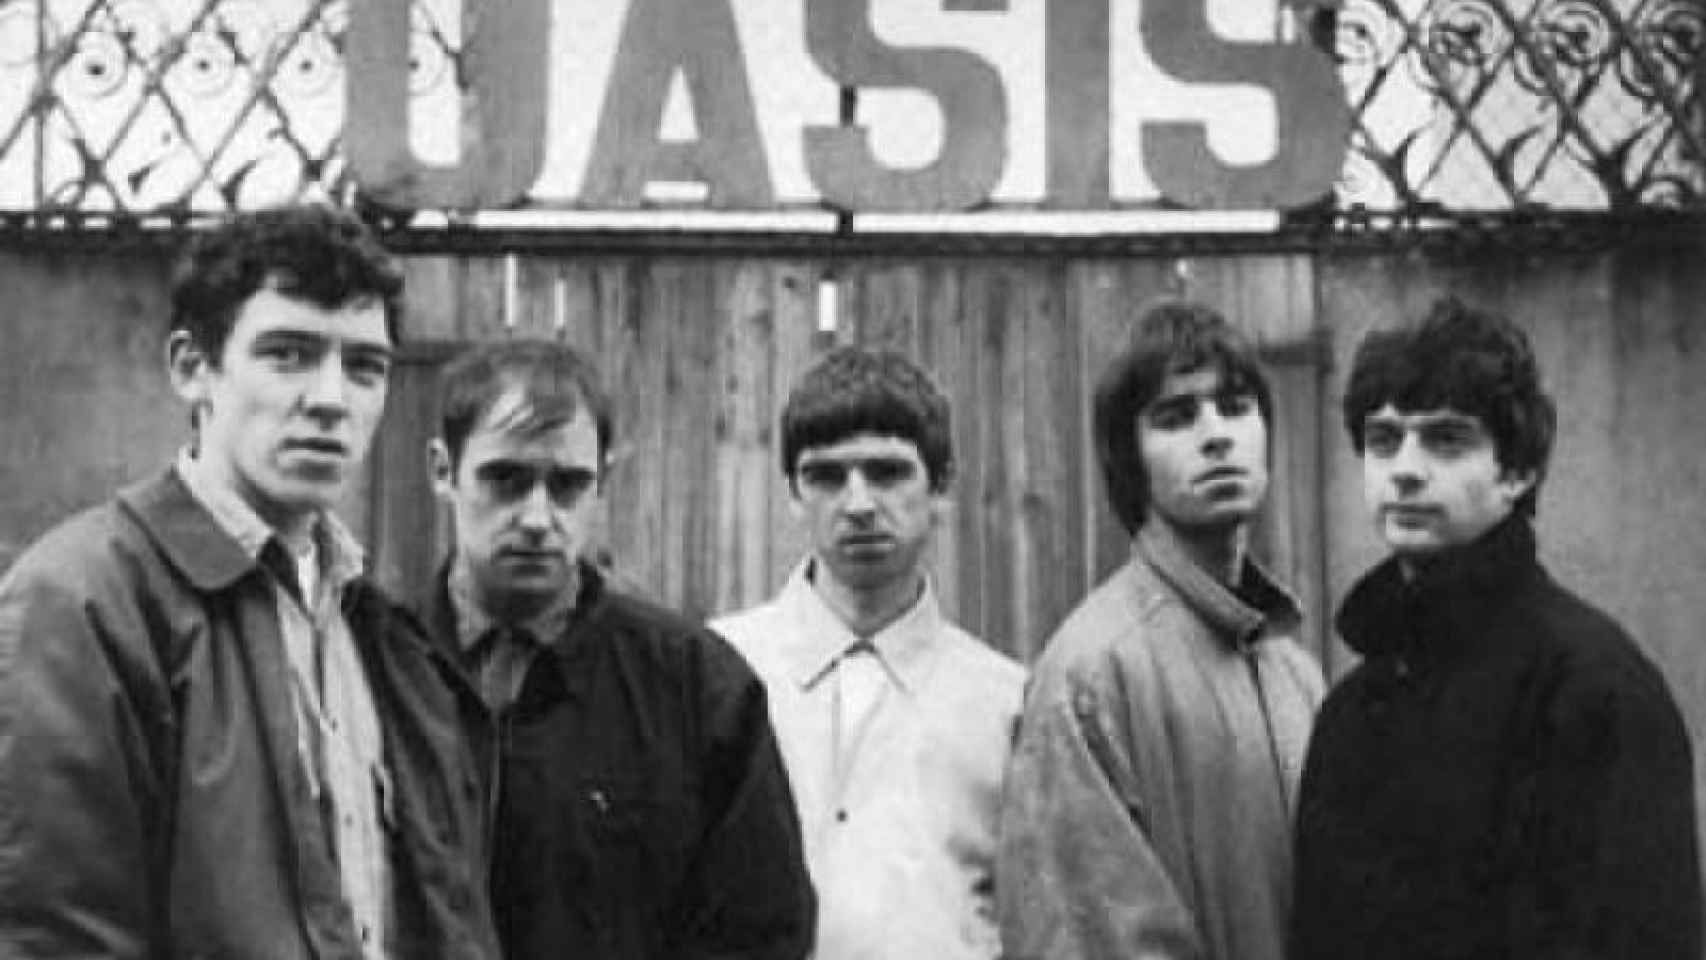 El grupo Oasis nació en Manchester en 1990.